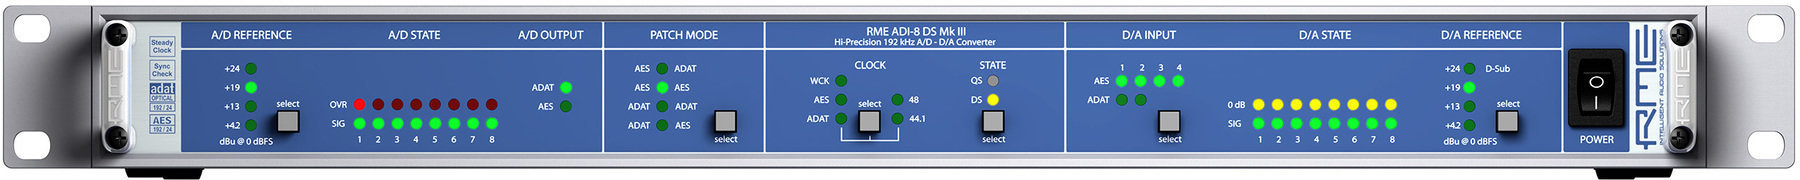 Digitalni audio pretvarač RME RME ADI-8 DS MKIII